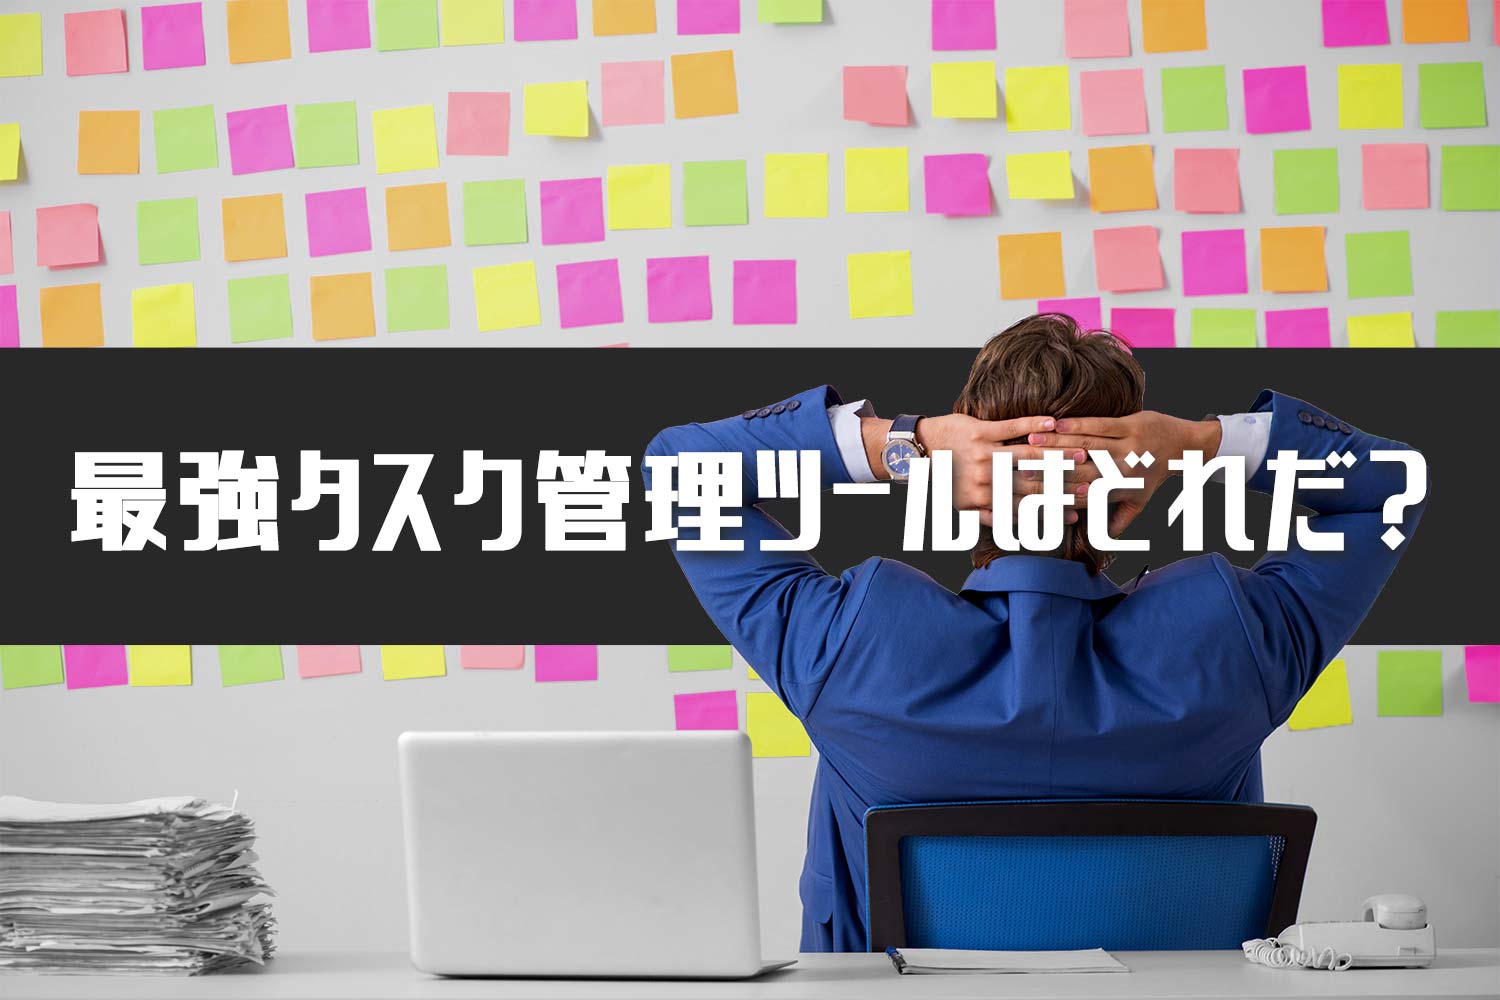 年更新 フリーで使える個人向けおすすめタスク管理ツール15選 Jmatsuzaki